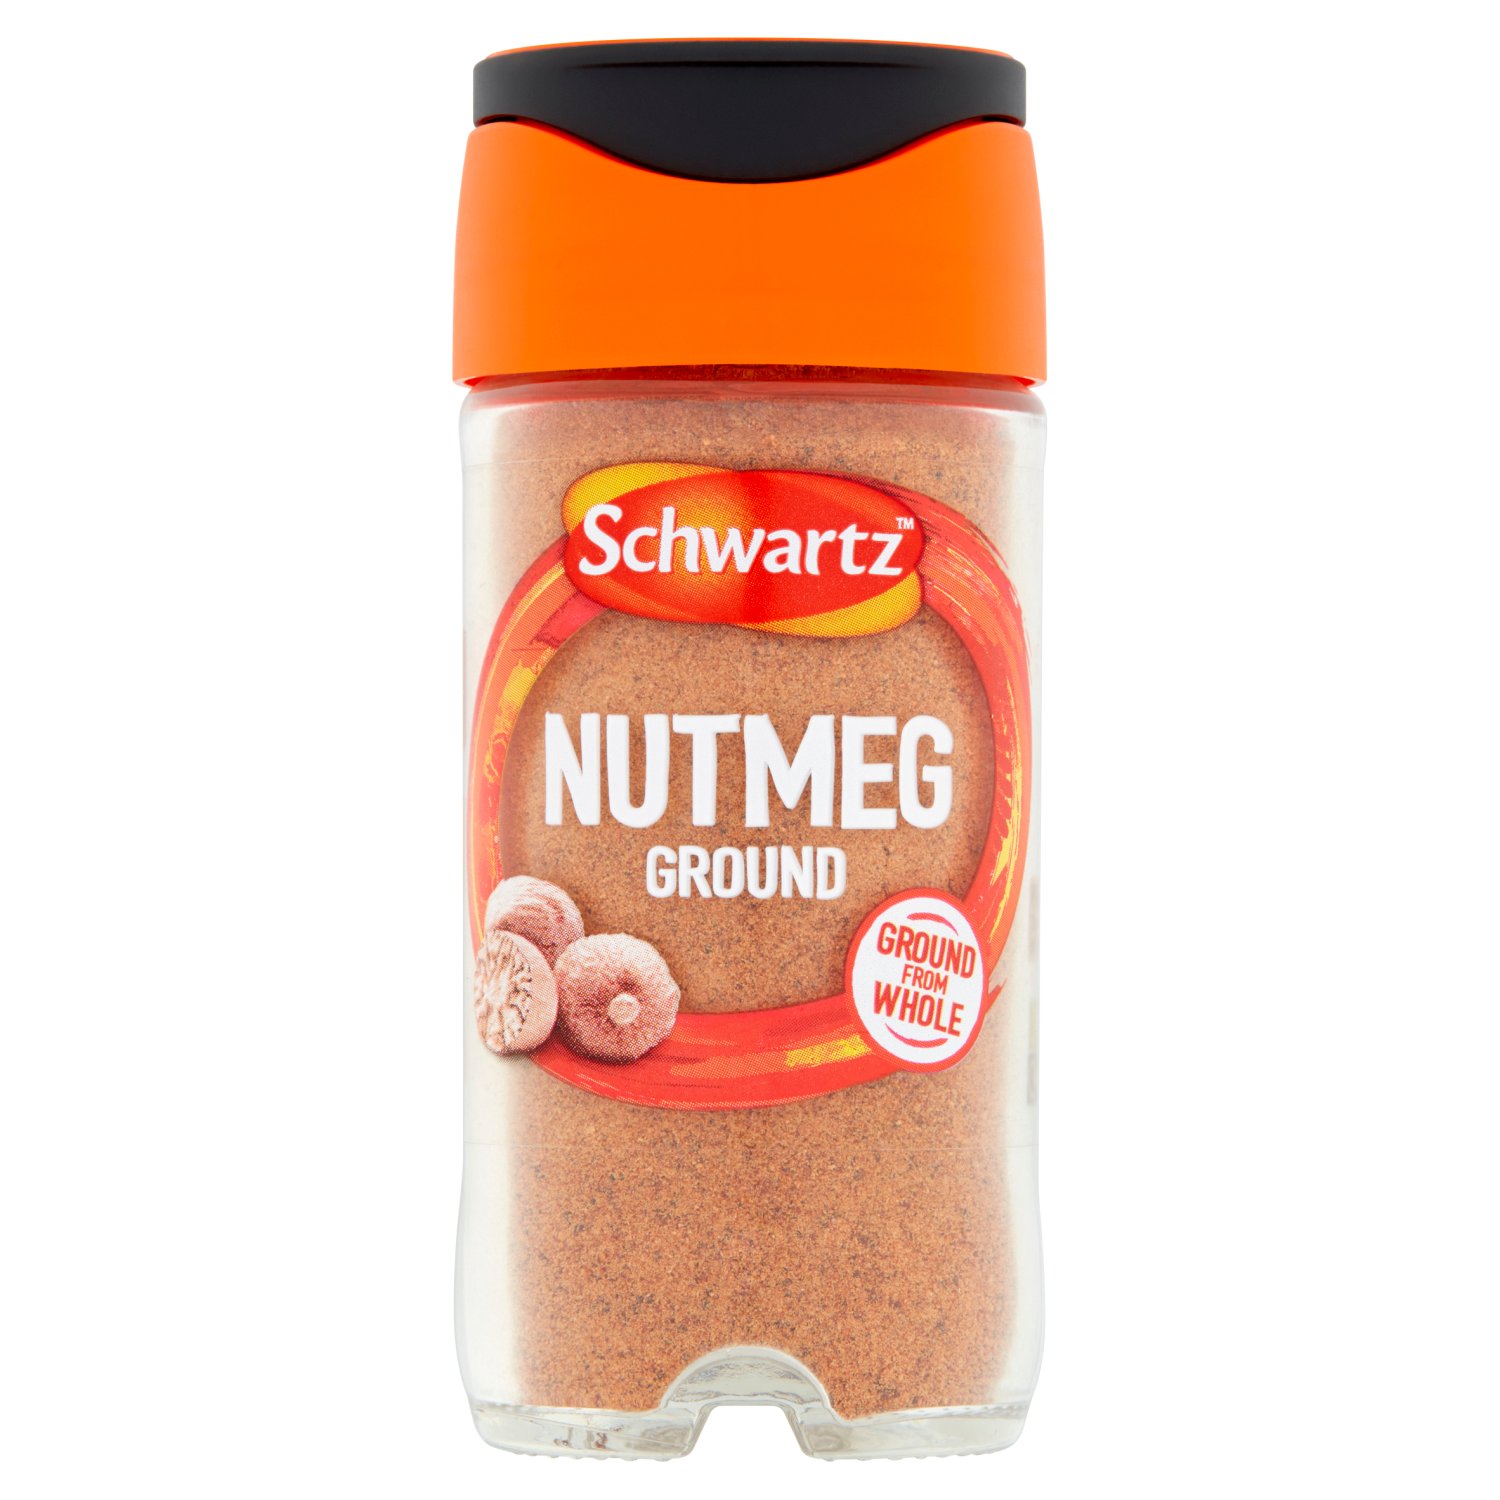 Schwartz Nutmeg Ground Jar (32 g)